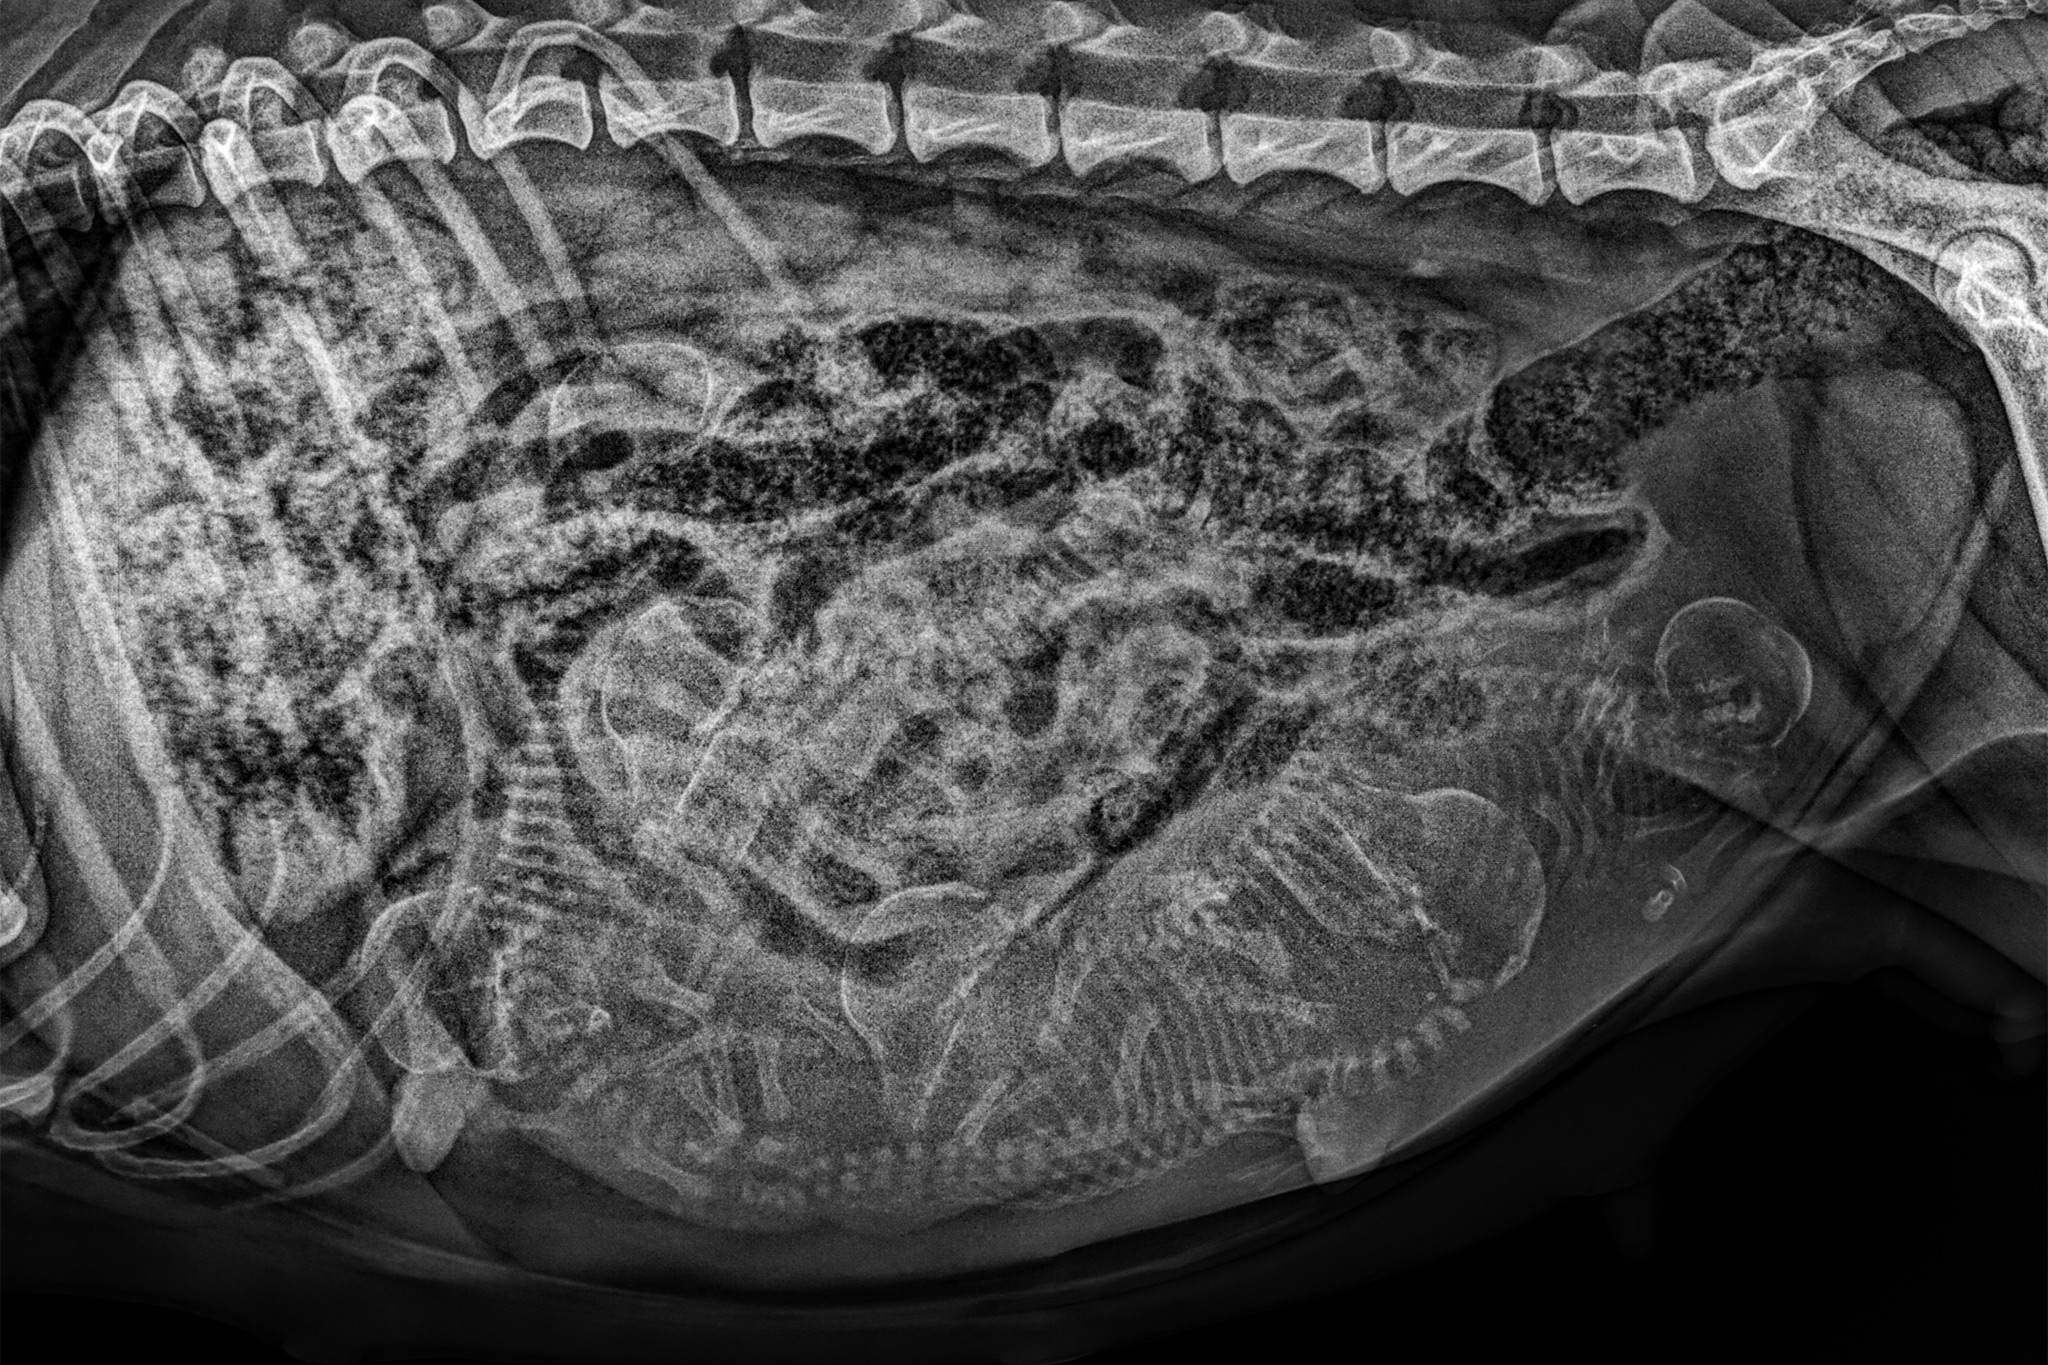 Röntgenbild einer trächtigen Hündin